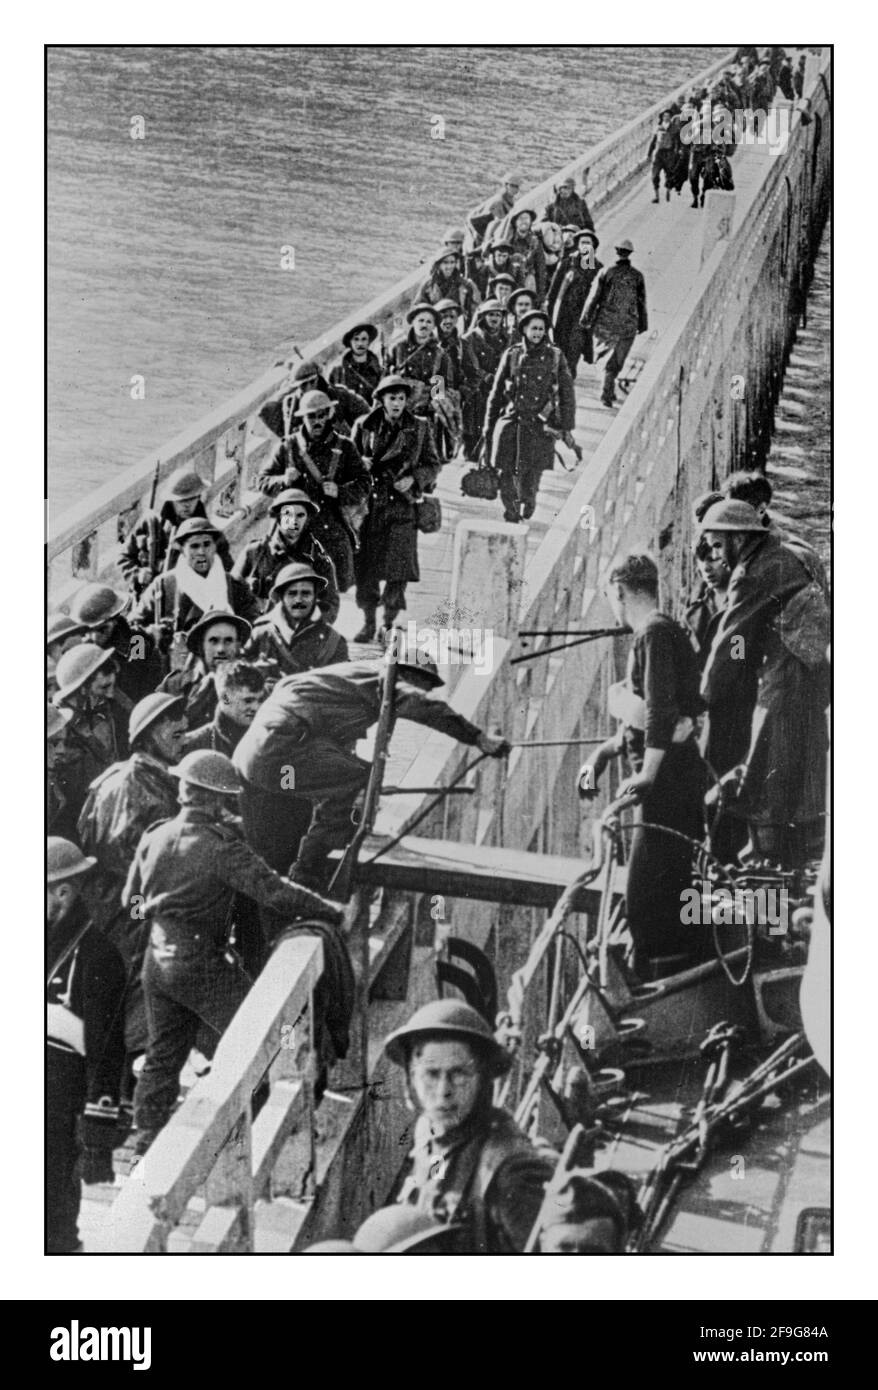 EVAKUIERUNG von DUNKIRK im 2. Weltkrieg AM 4 1940. Juni begrüßte Premierminister Winston Churchill die Evakuierung von Dunkirk als ein "Wunder der Befreiung". Die Operation Dynamo rettete mehr als 300,000 mutige alliierte Truppen vor dem Tod oder der Inhaftierung durch die Besatzungsmacht der Nazis in Frankreich, Holland und Belgien Stockfoto